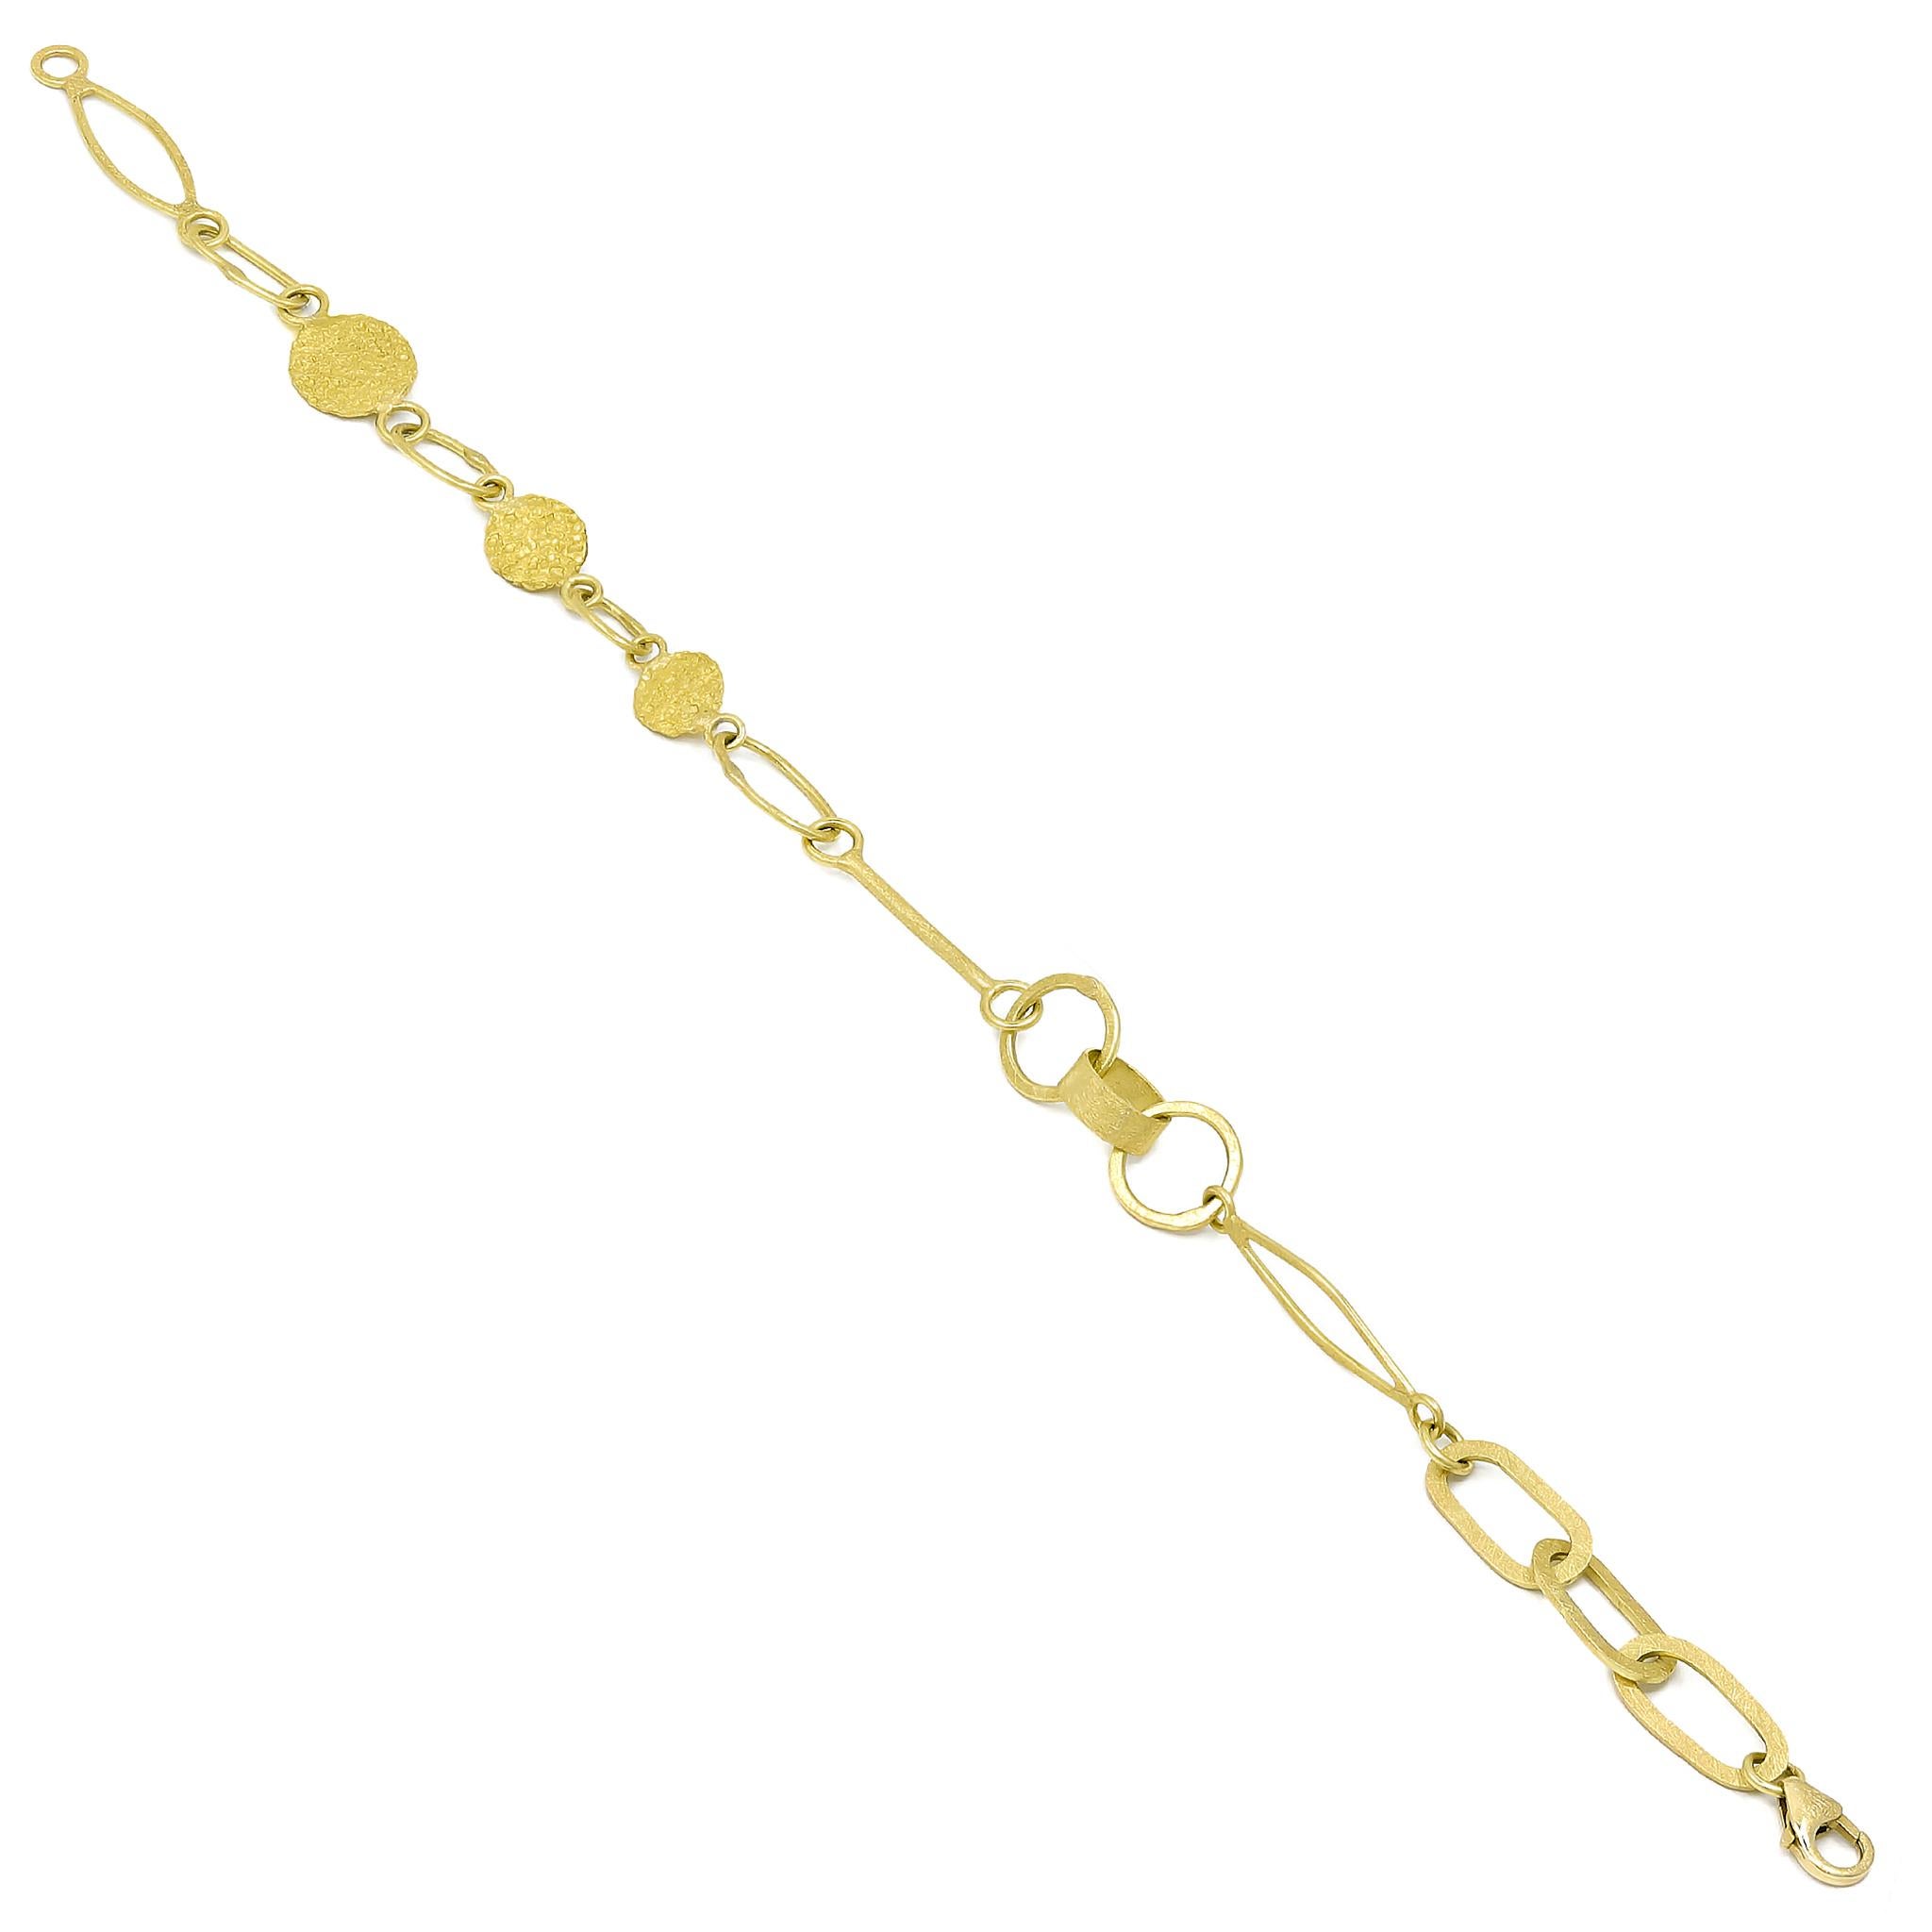 Le bracelet en chaîne Mix 'n Mingle, fabriqué à la main par le bijoutier Petra Class, présente un assortiment spectaculaire de maillons en or jaune 18k et en or jaune 22k, signature de l'artiste, disposés de manière complexe et reliés entre eux pour